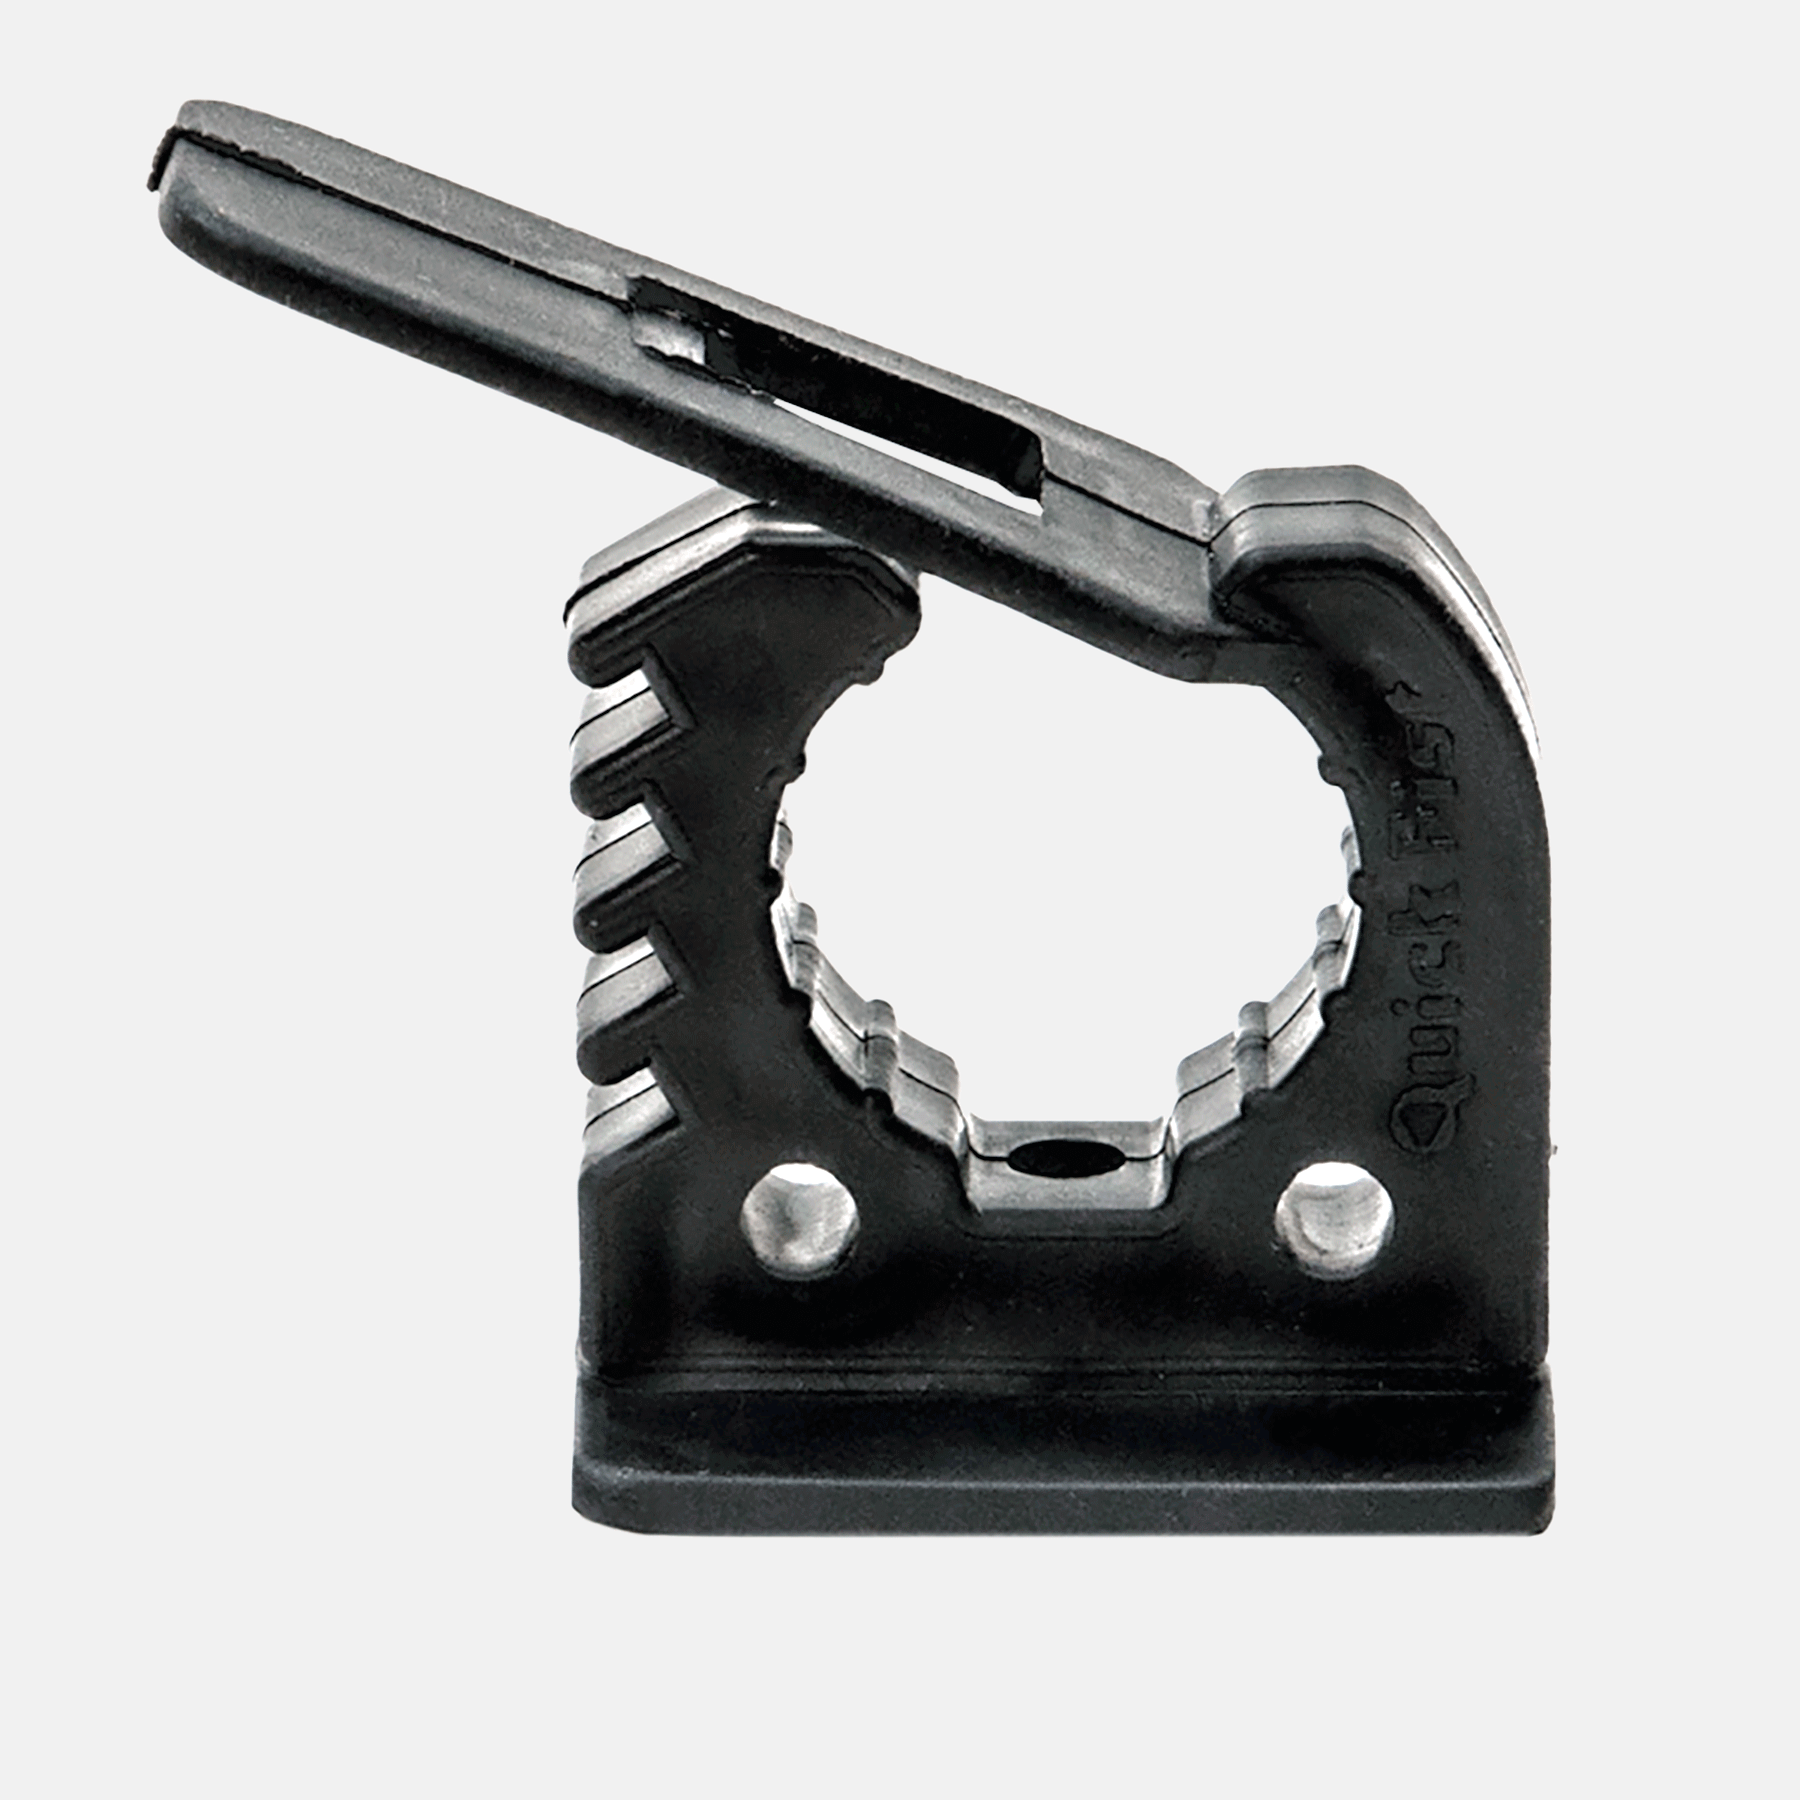 Quick Fist 13 - 22 mm Micro Werkzeughalter 4 Stk.